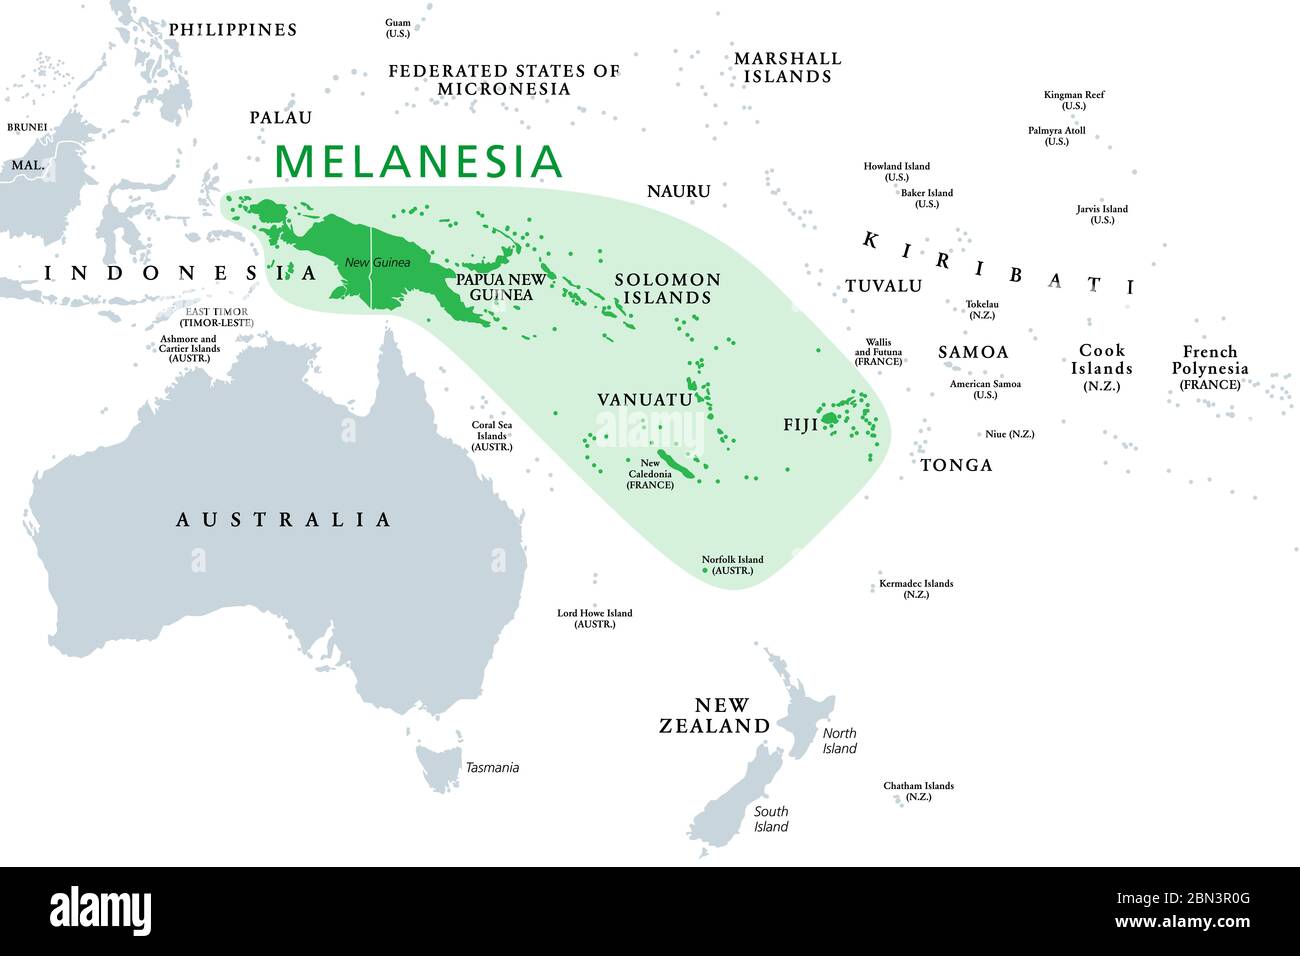 Melanesia, sottoregione dell'Oceania, mappa politica. Si estende dalla Nuova Guinea nell'Oceano Pacifico sudoccidentale a Tonga. Foto Stock